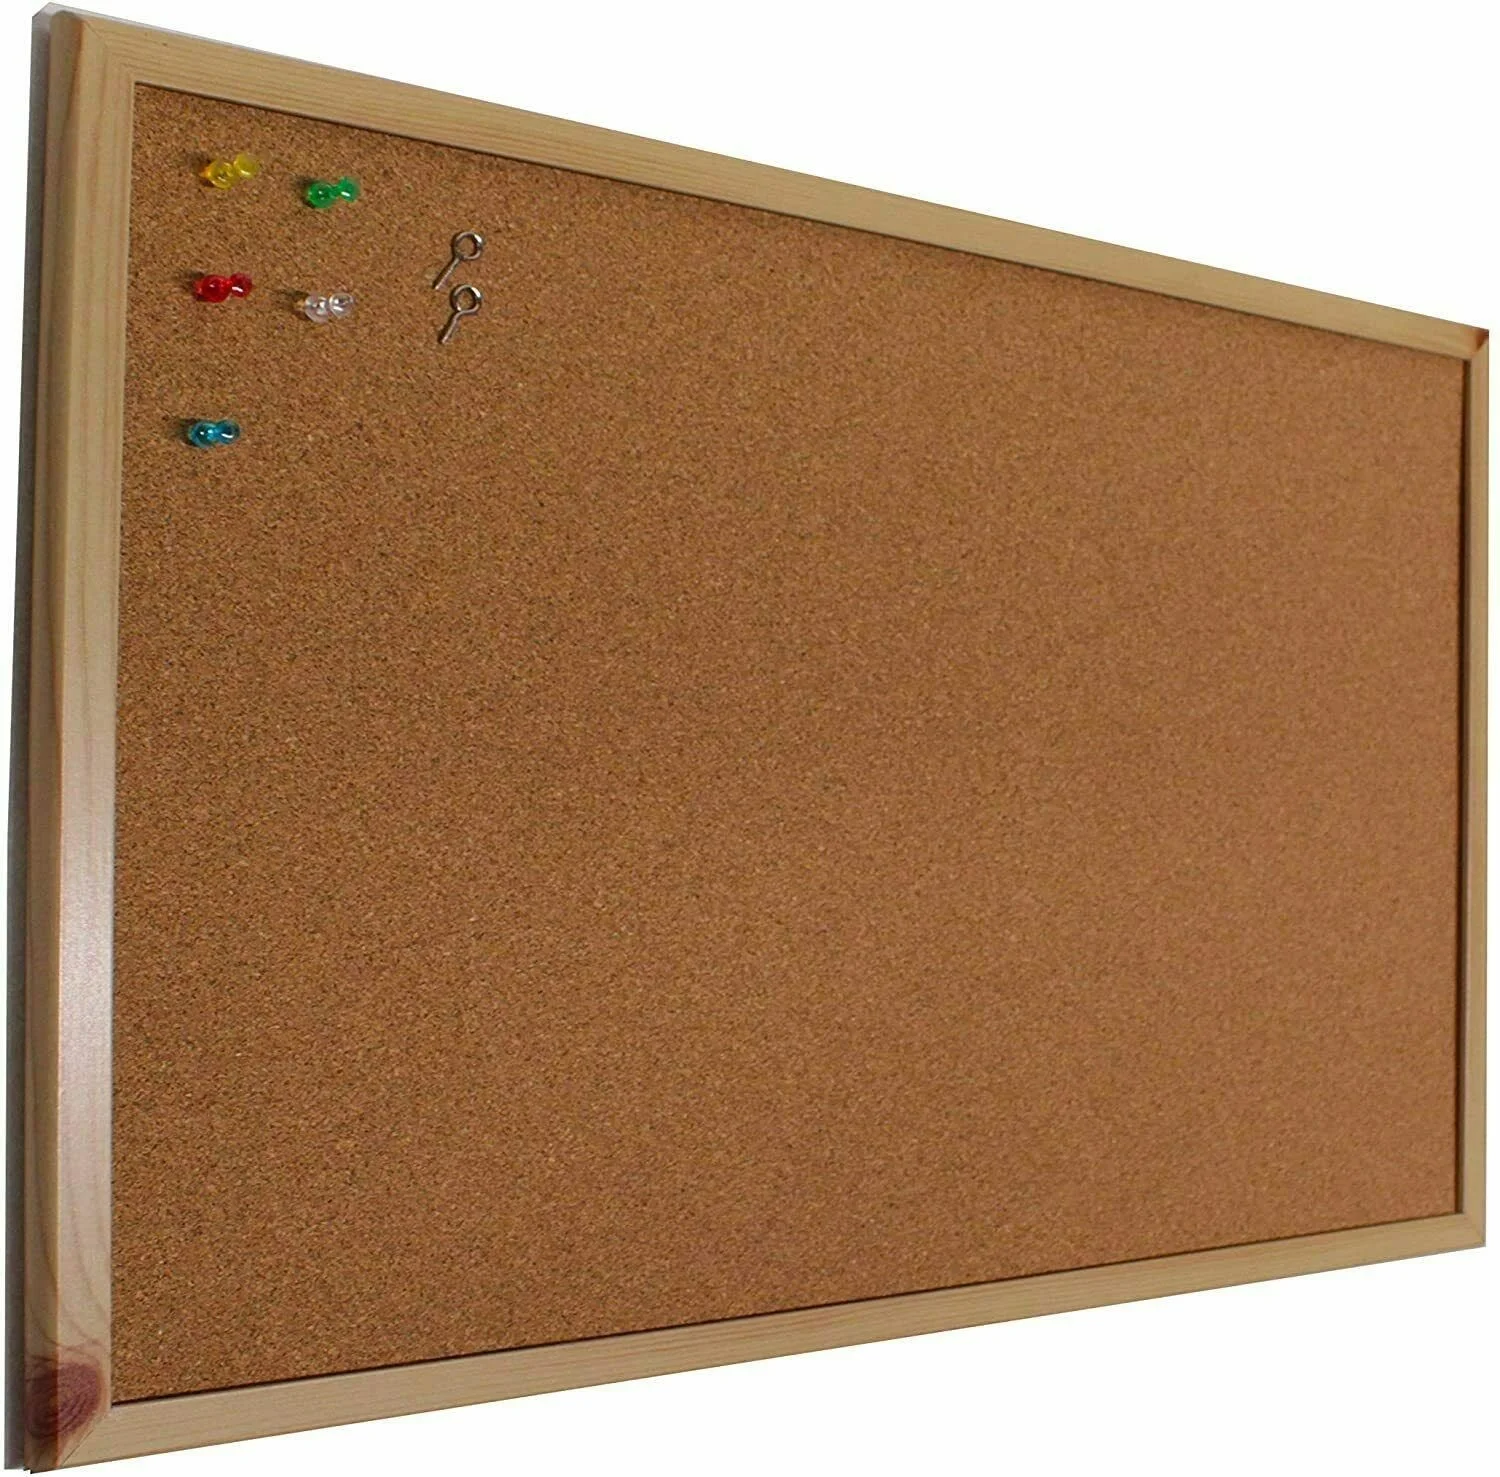 MAXIA MARKET - Tablero de corcho pared con marco madera (suro pared). Pizarra corcho como panel o tablon calendario,mapa,fotos